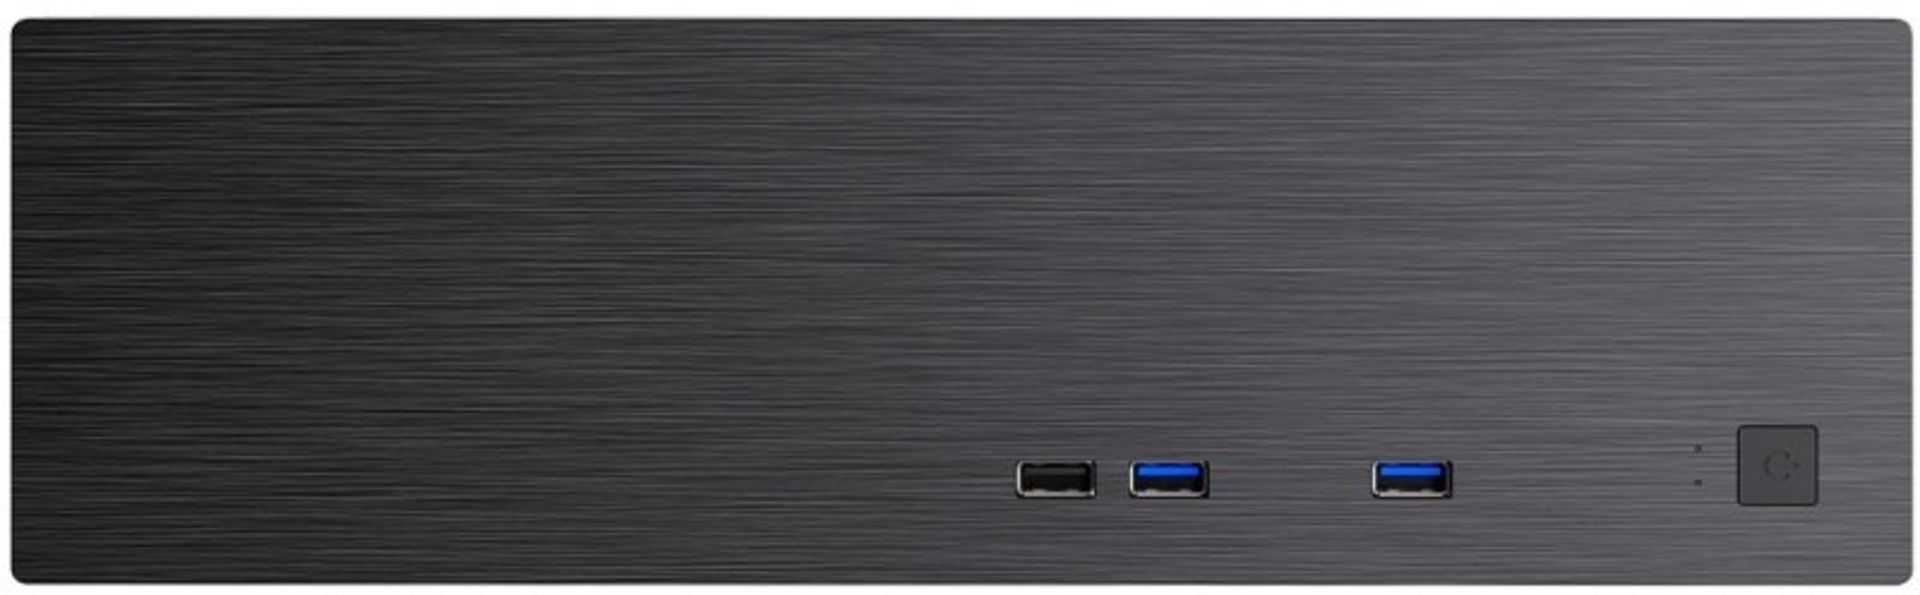 3x NEW & BOXED CIT S506 Micro ATX Desktop Case - BLACK. RRP £44.99 EACH. (PCK). The CiT S506 slim - Image 6 of 10